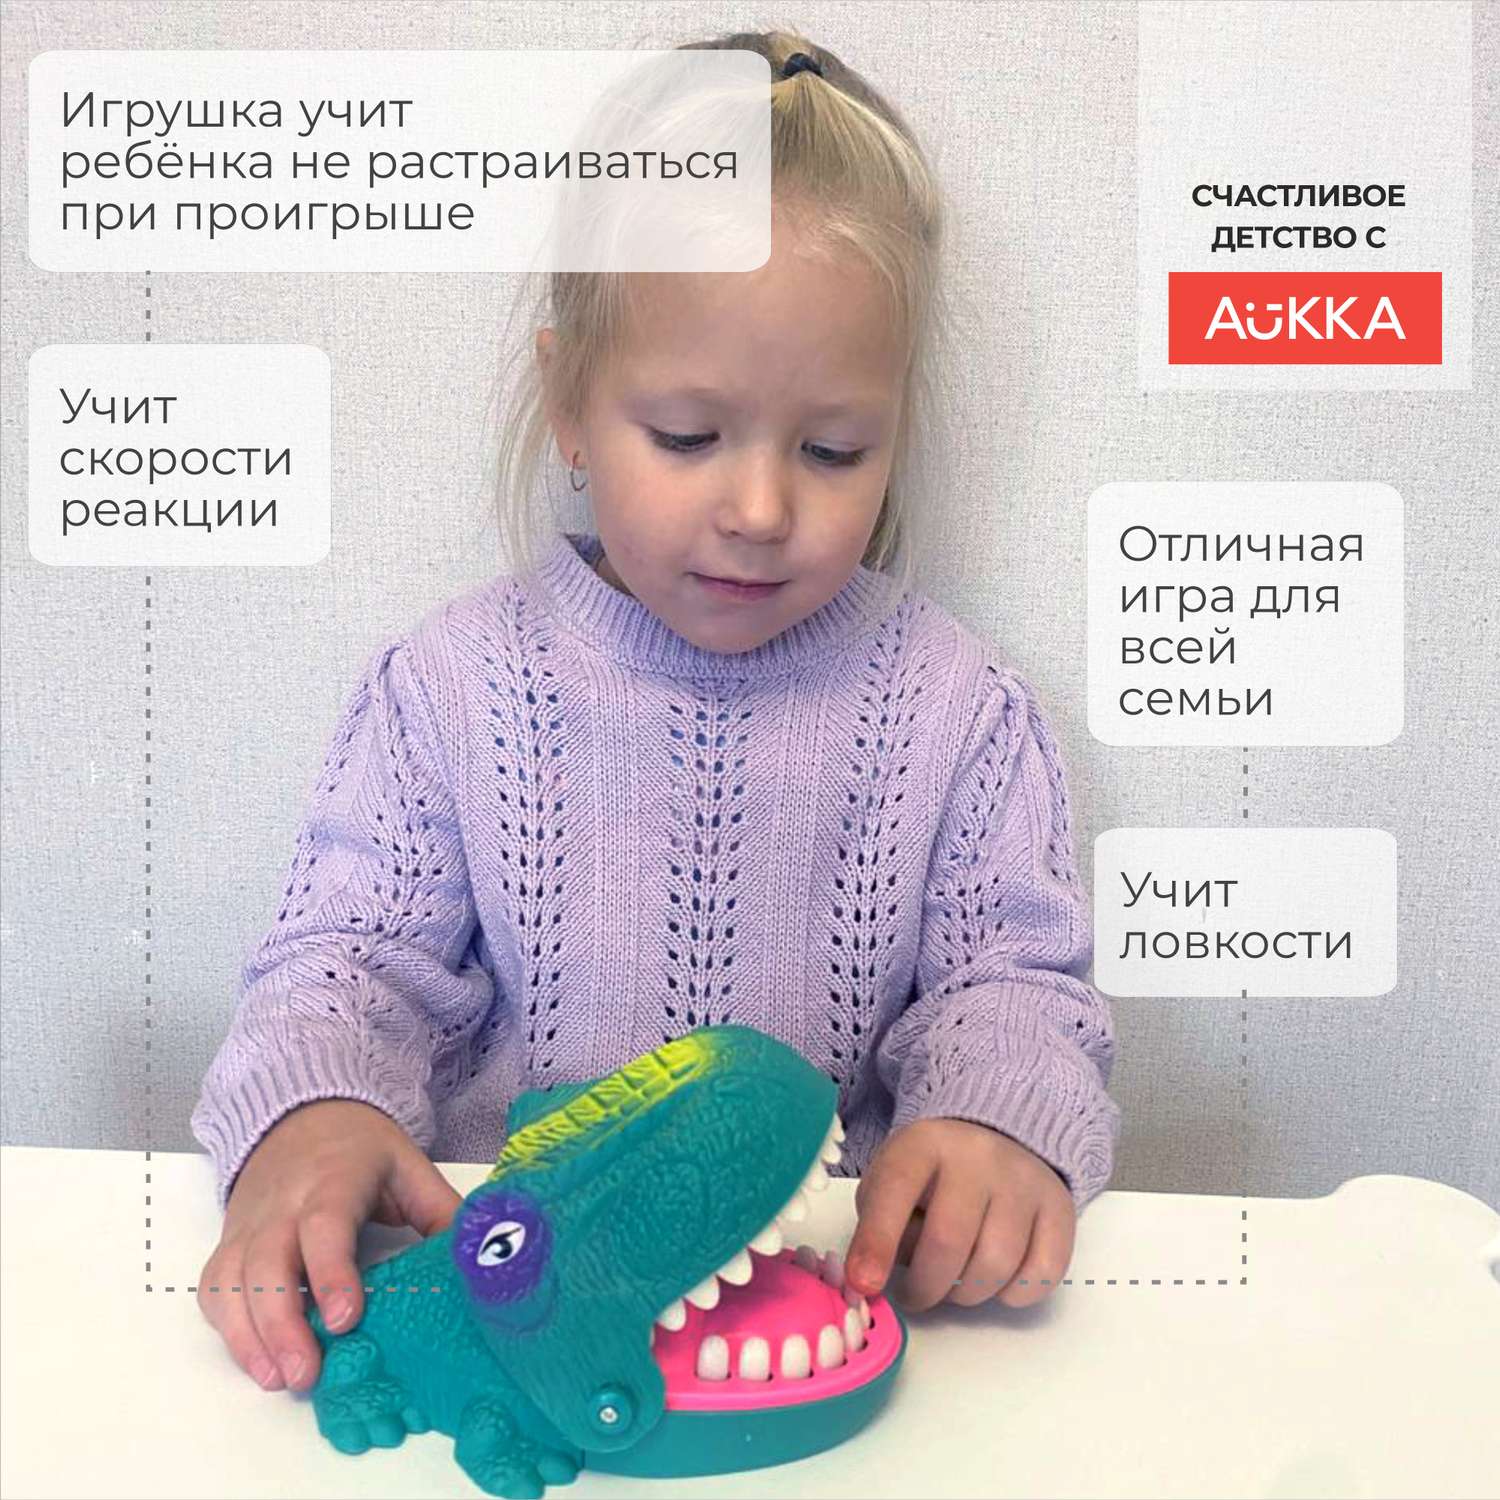 Настольная игра AUKKA динозавр зубастик угадай больной зуб - фото 2